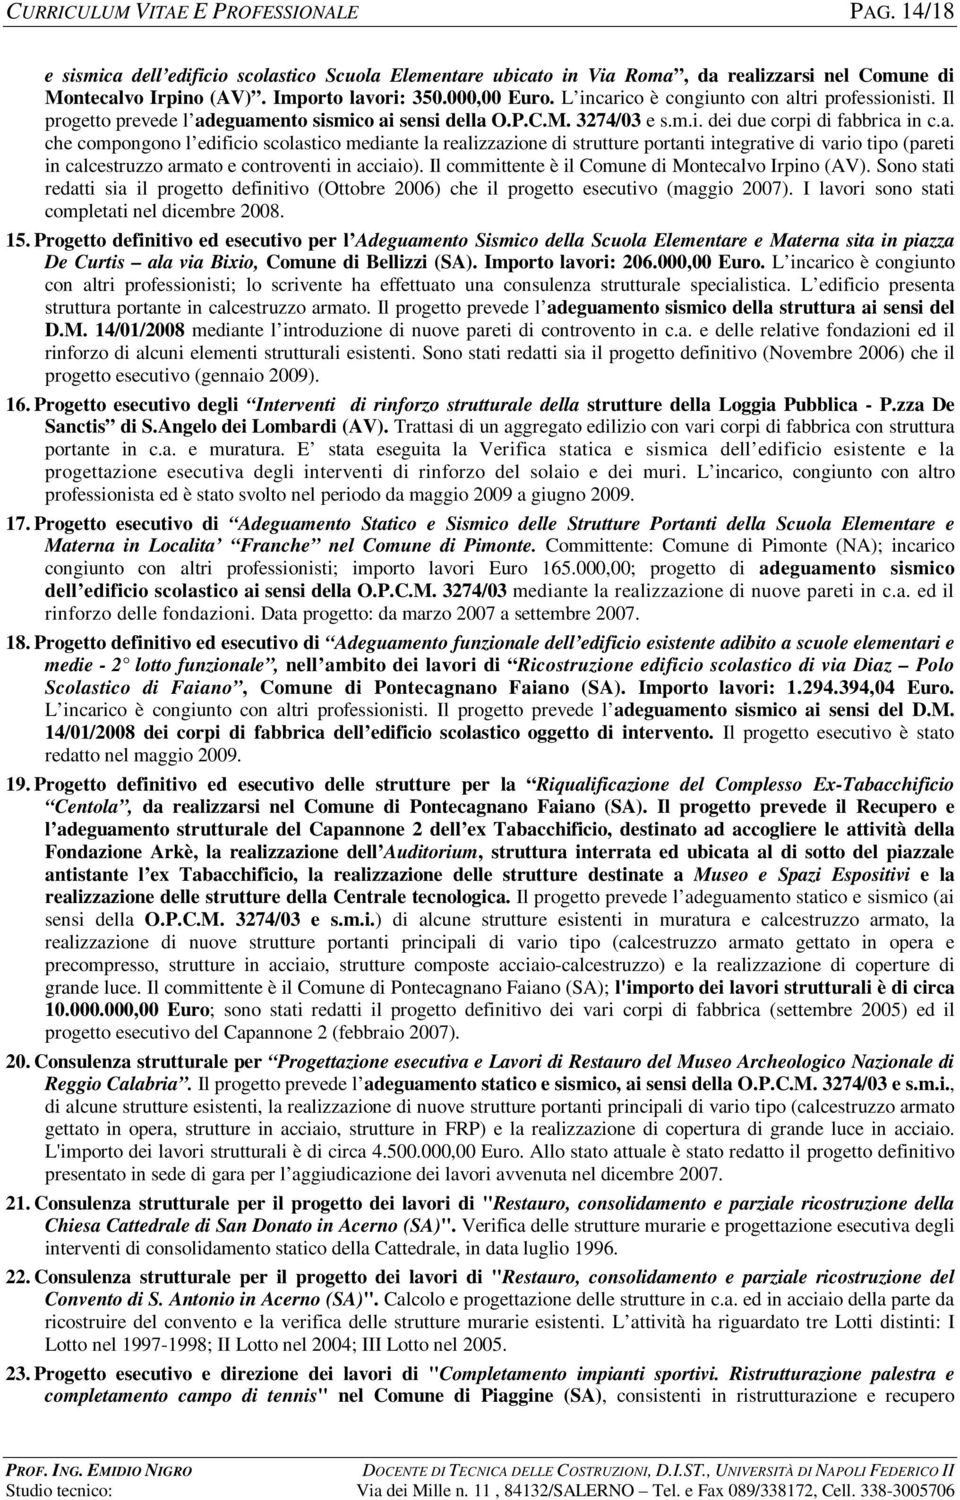 Il committente è il Comune di Montecalvo Irpino (AV). Sono stati redatti sia il progetto definitivo (Ottobre 2006) che il progetto esecutivo (maggio 2007).